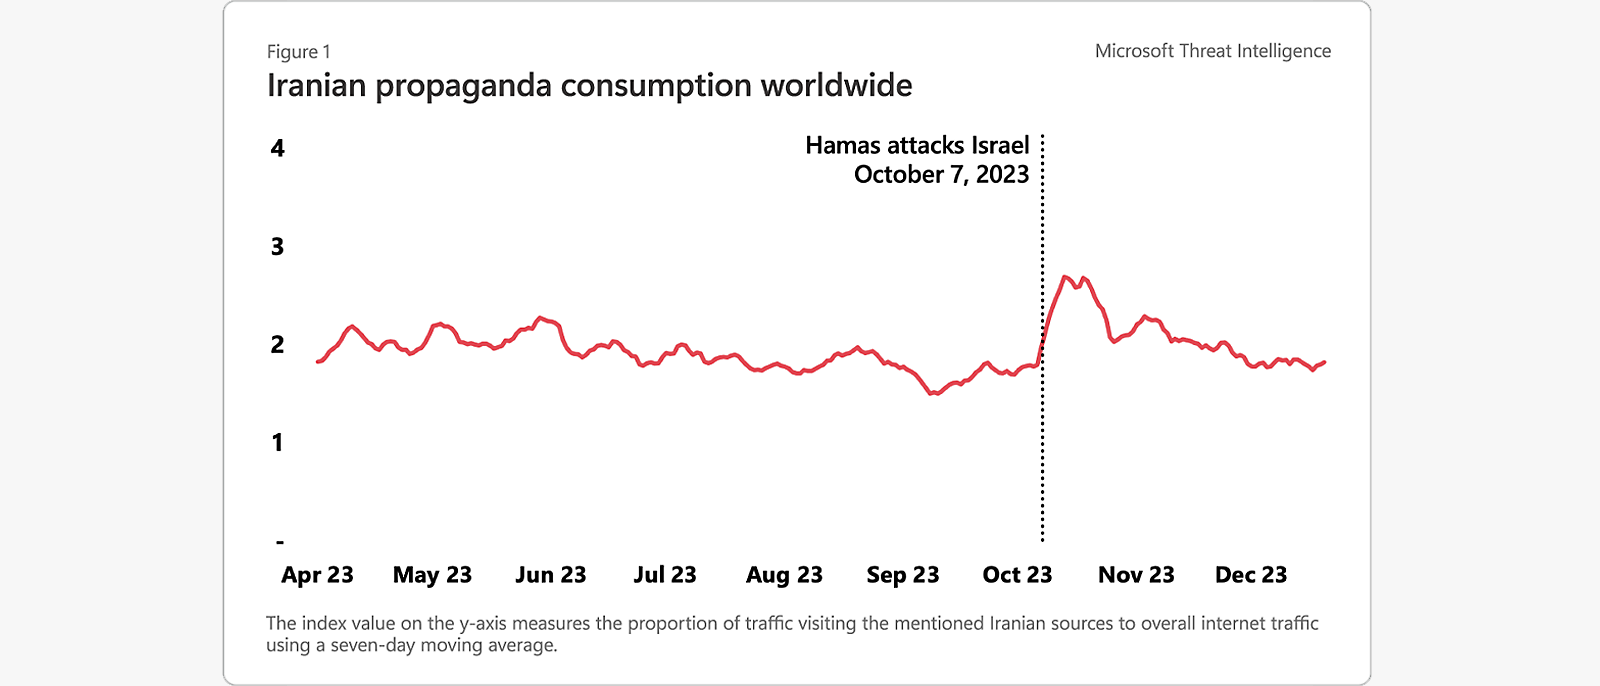 Consumo de propaganda iraní en todo el mundo ilustrado en una línea de tiempo y un gráfico de proporción de tráfico